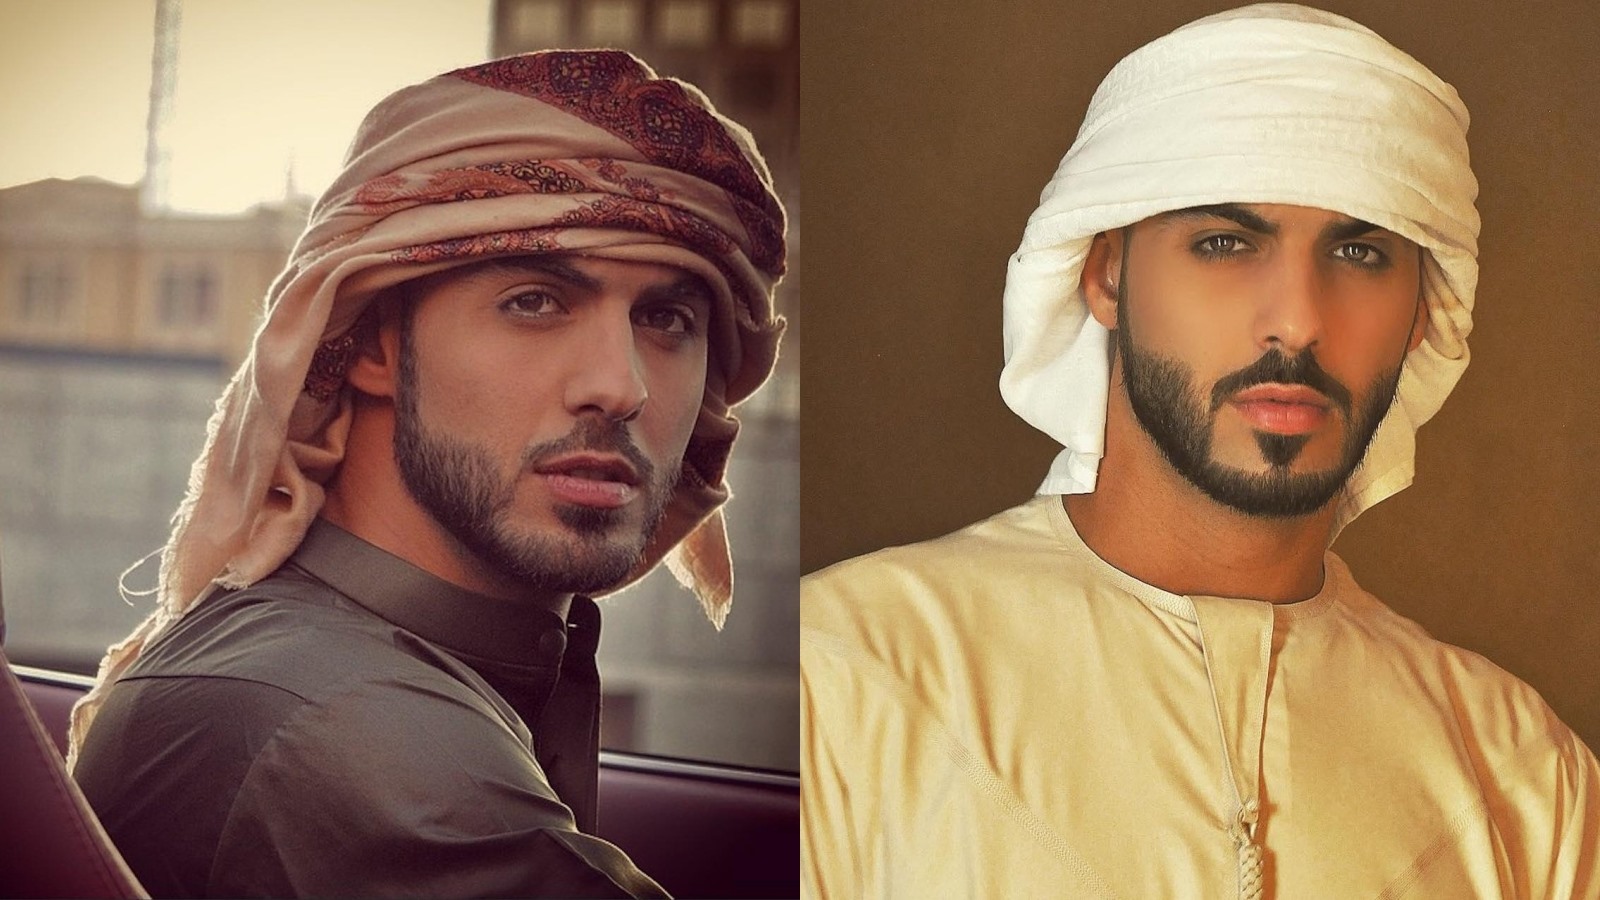 Từ một người mẫu vô danh, Omar Borkan Al Gala trở thành cái tên được săn đó sau sự cố “dở khóc dở cười“. Ảnh: Instagram nhân vật